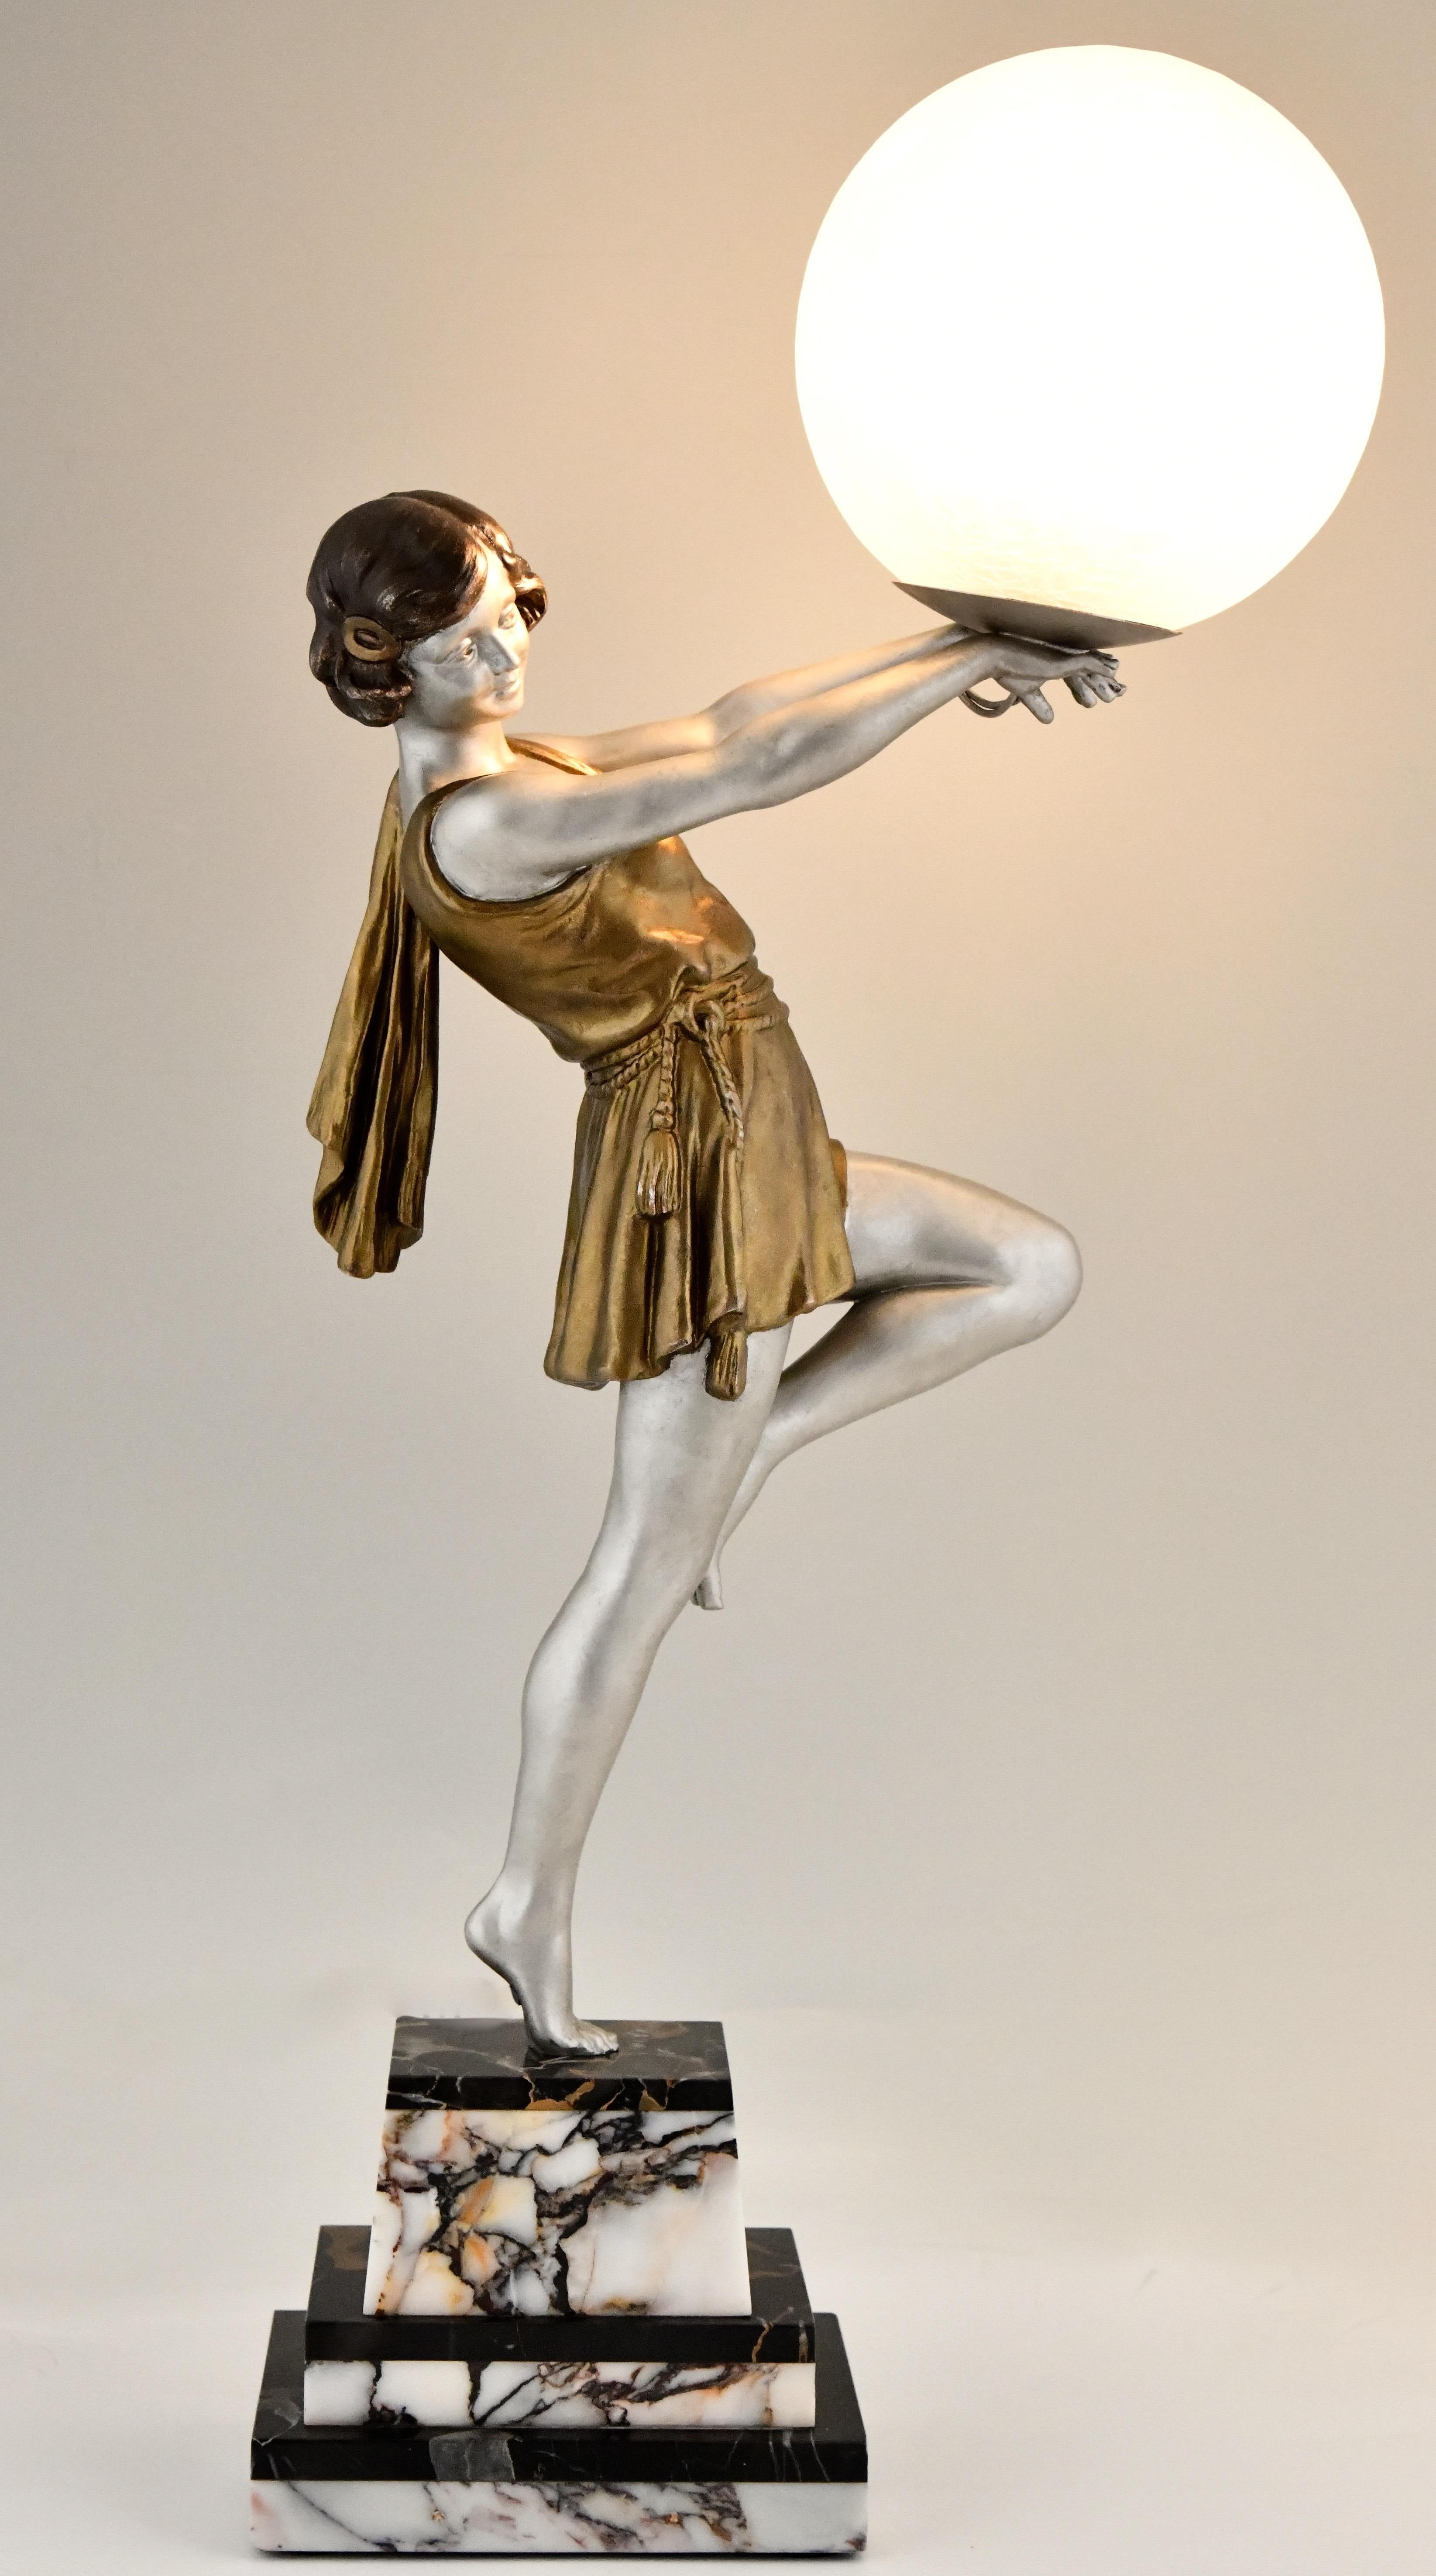 Lampe Art Déco dame tenant un ballon par Emile Carlier
Métal blanc à patine argentée et dorée sur un socle en marbre noir et blanc.
Abat-jour en verre craquelé.
France 1930.